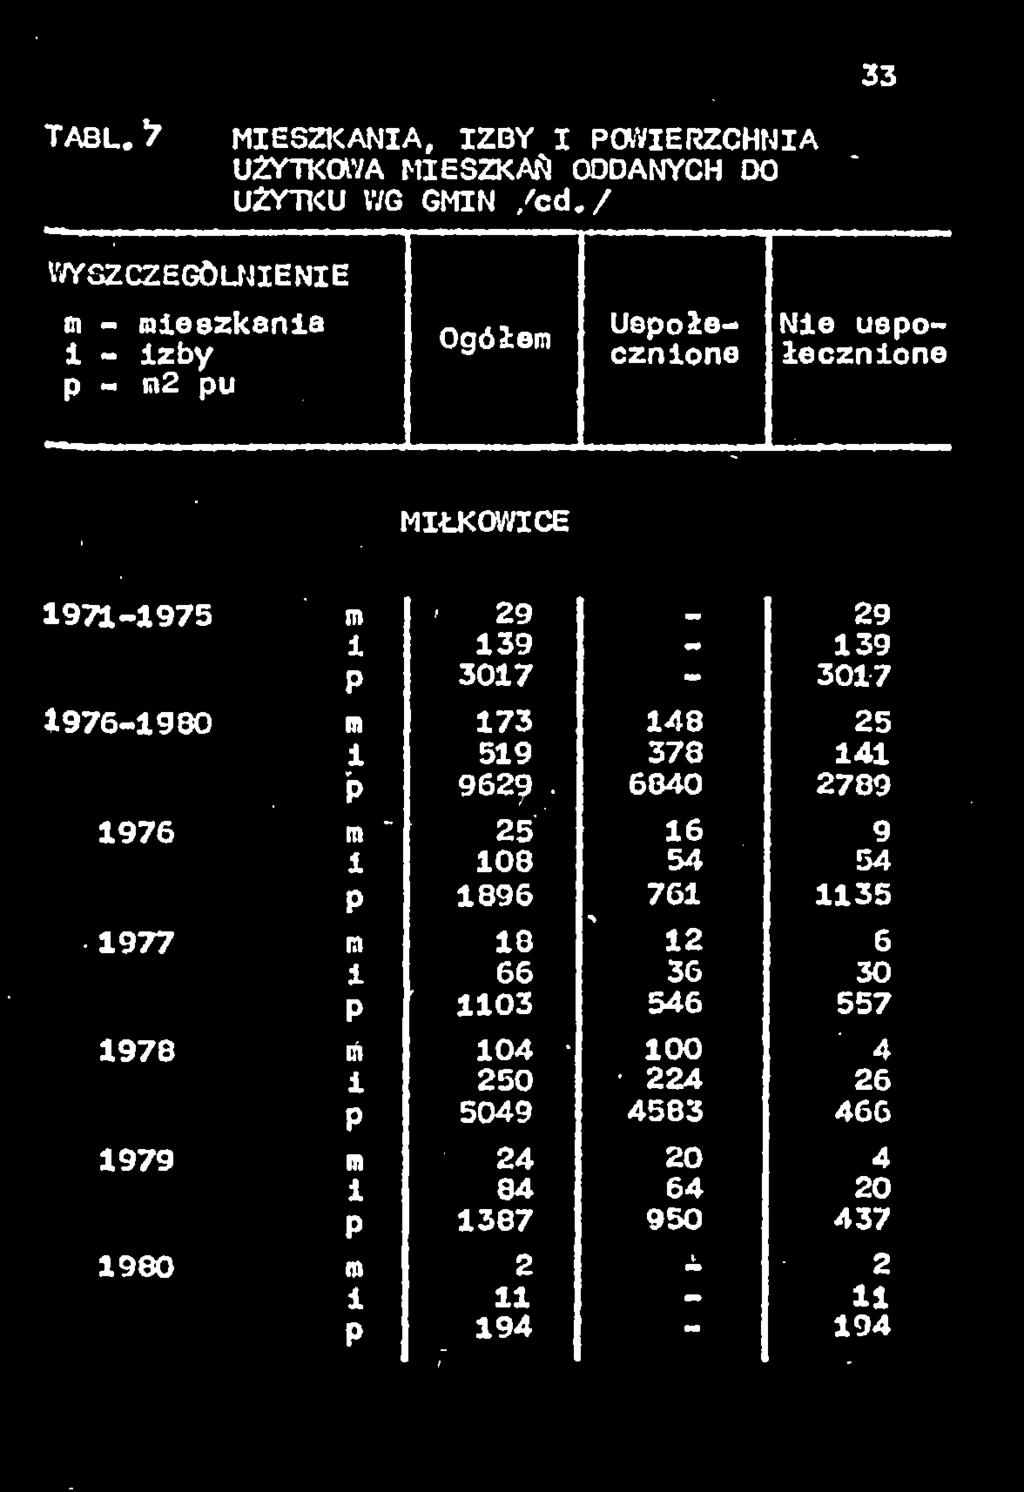 uspołecznone 1971-1975 m MIŁKOWICE,11 Jt 1976-1980